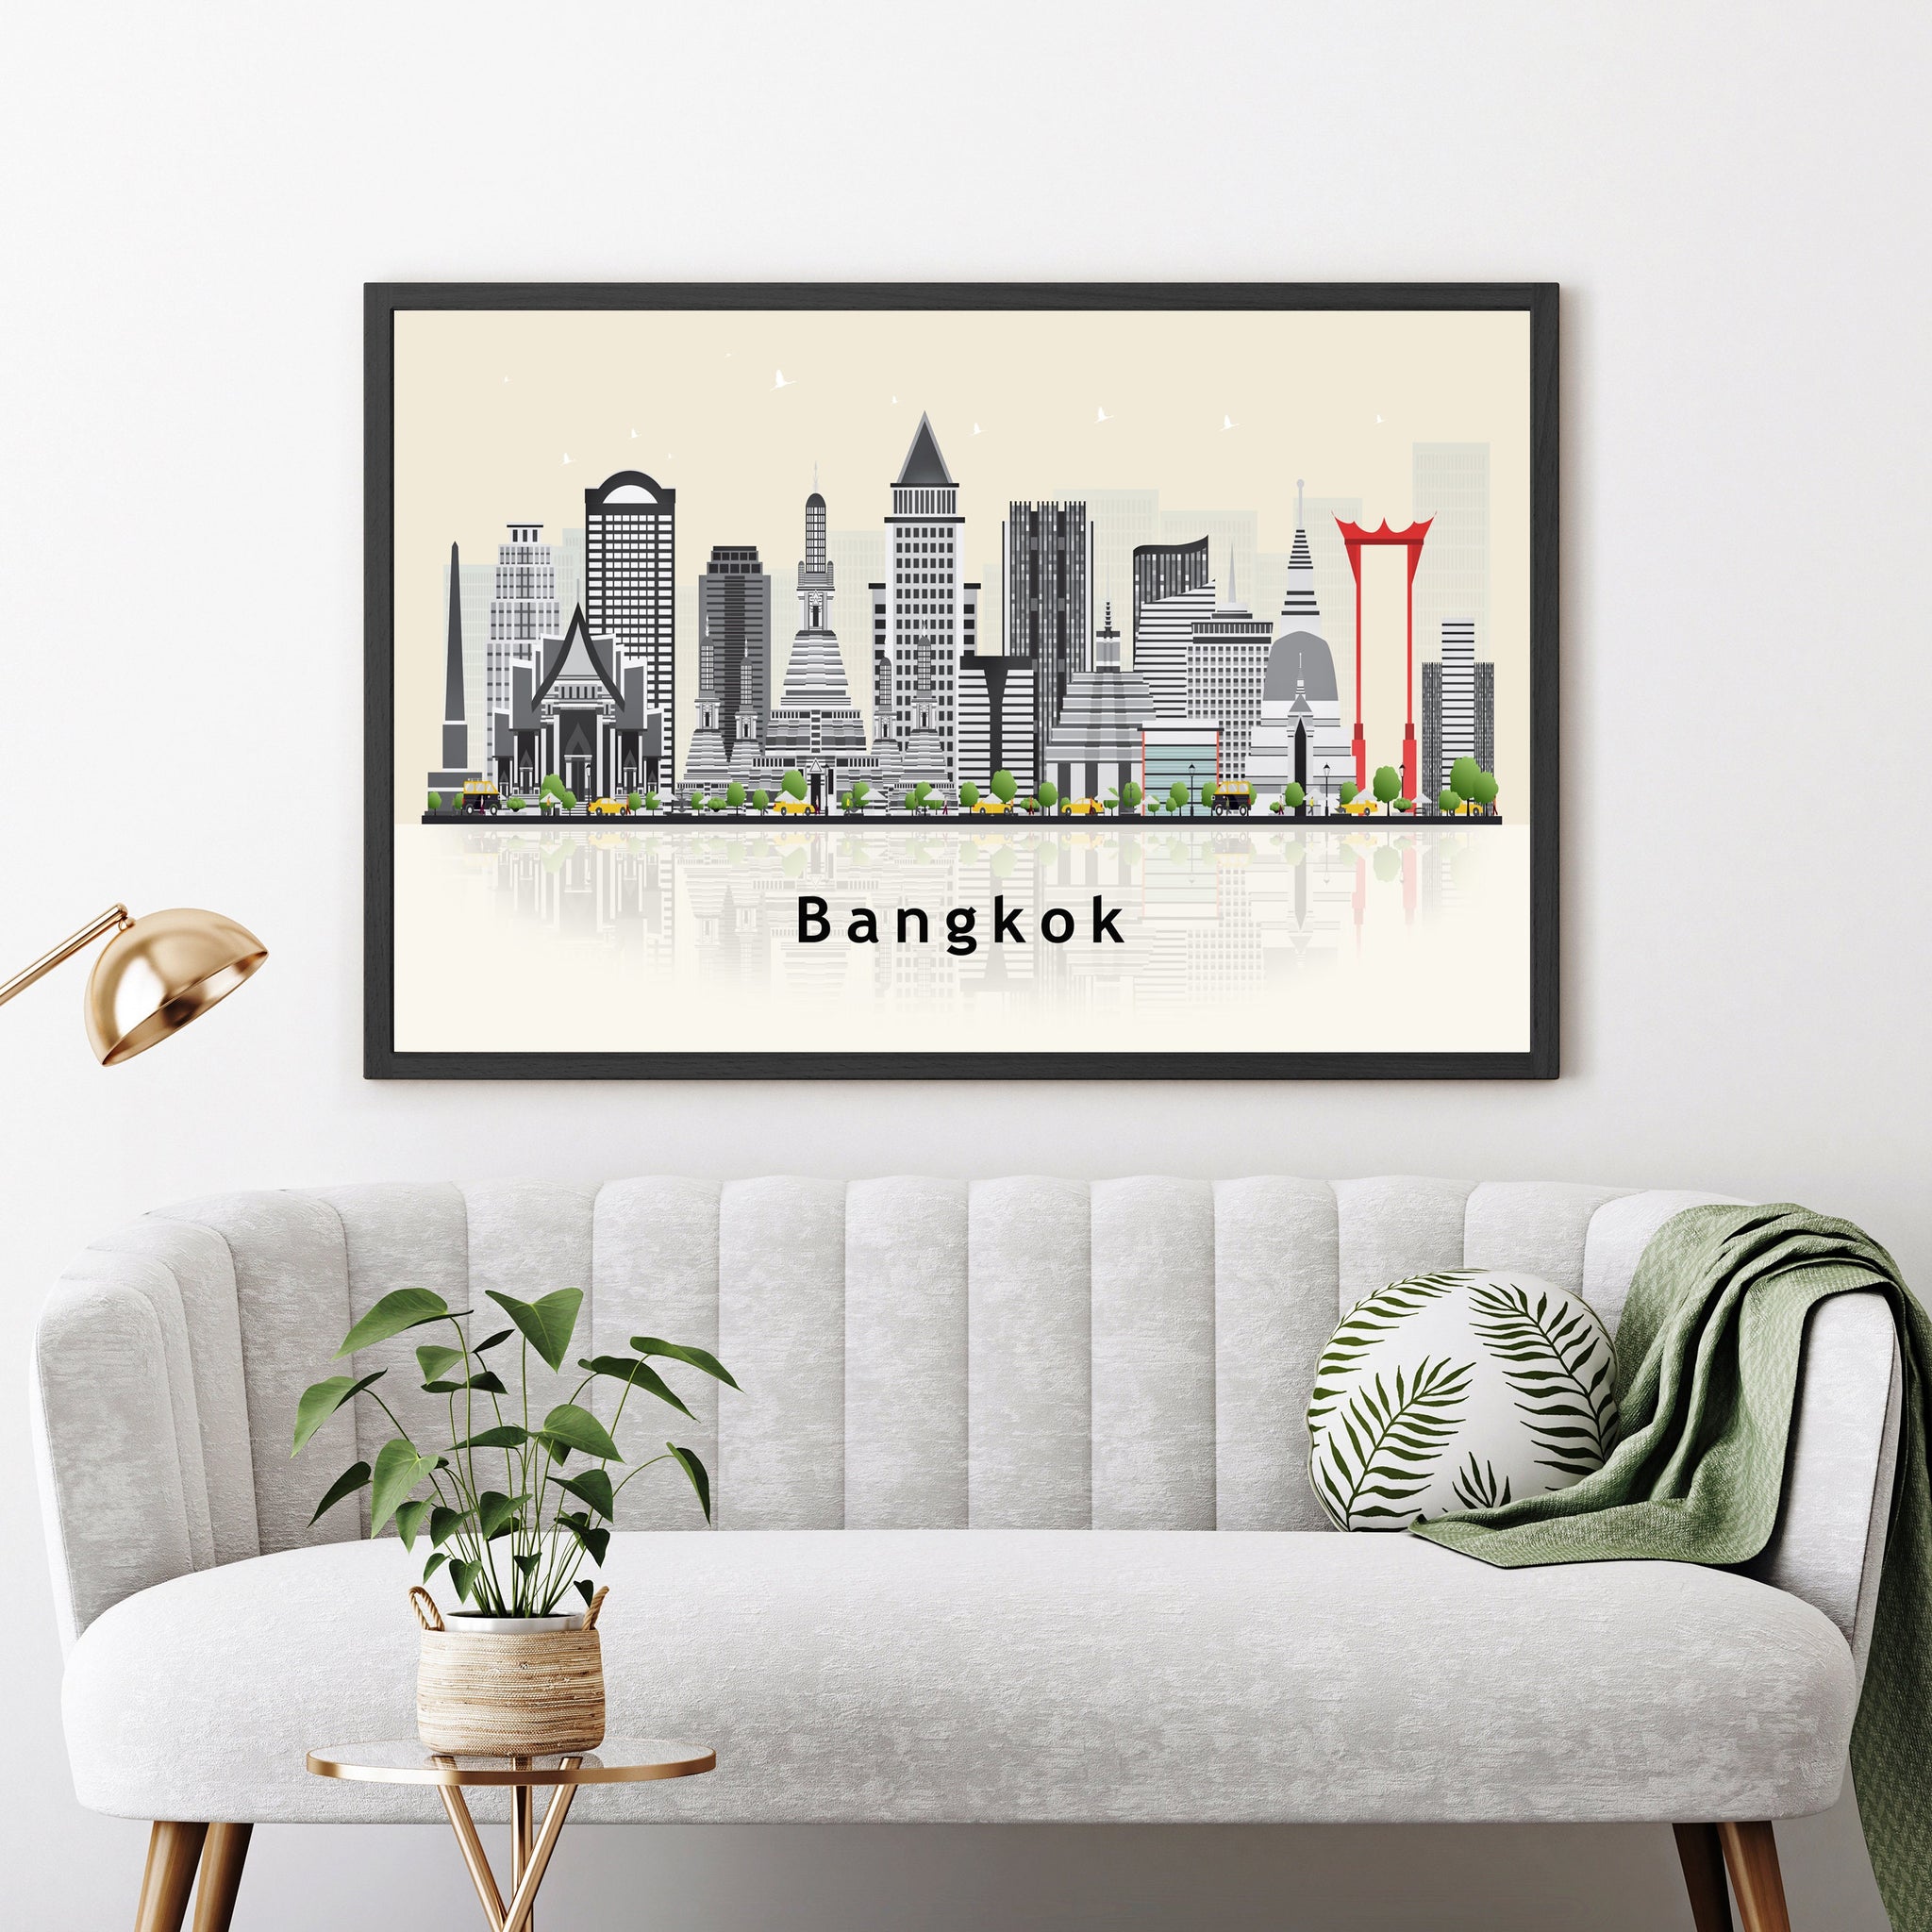 BANGKOK THAILAND Illustration skyline poster, Modern skyline cityscape poster, Bangkok city skyline landmark map poster, Home wall art